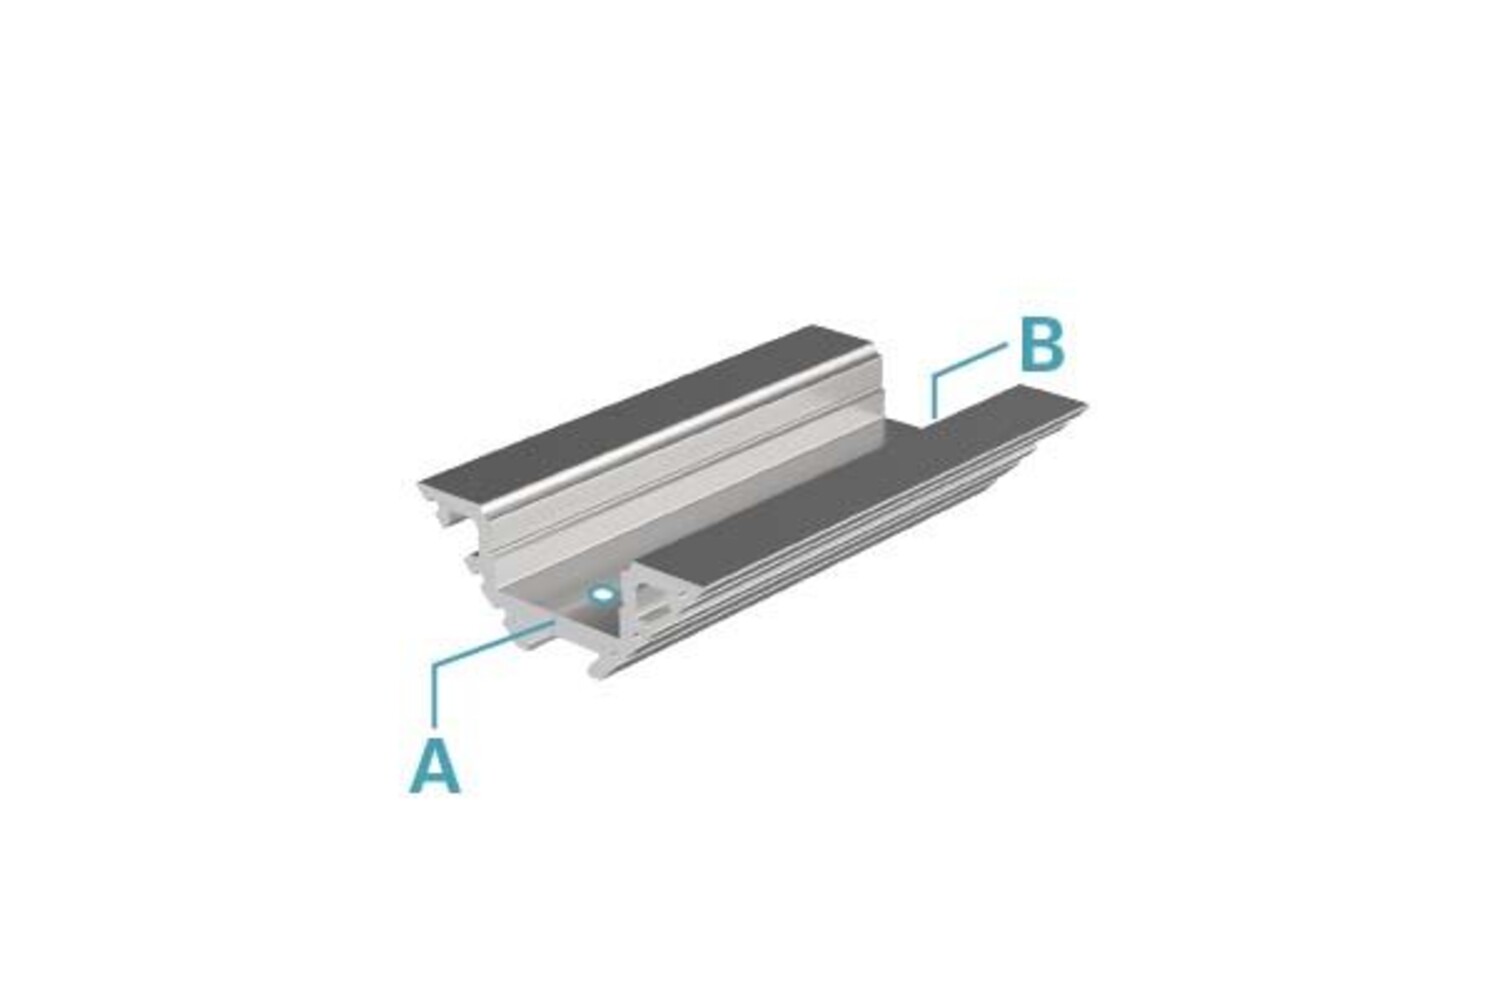 Silber mattes LED Profil von Deko-Light für 12-13.3 mm LED Stripes, eloxiert, und 1000 mm lang